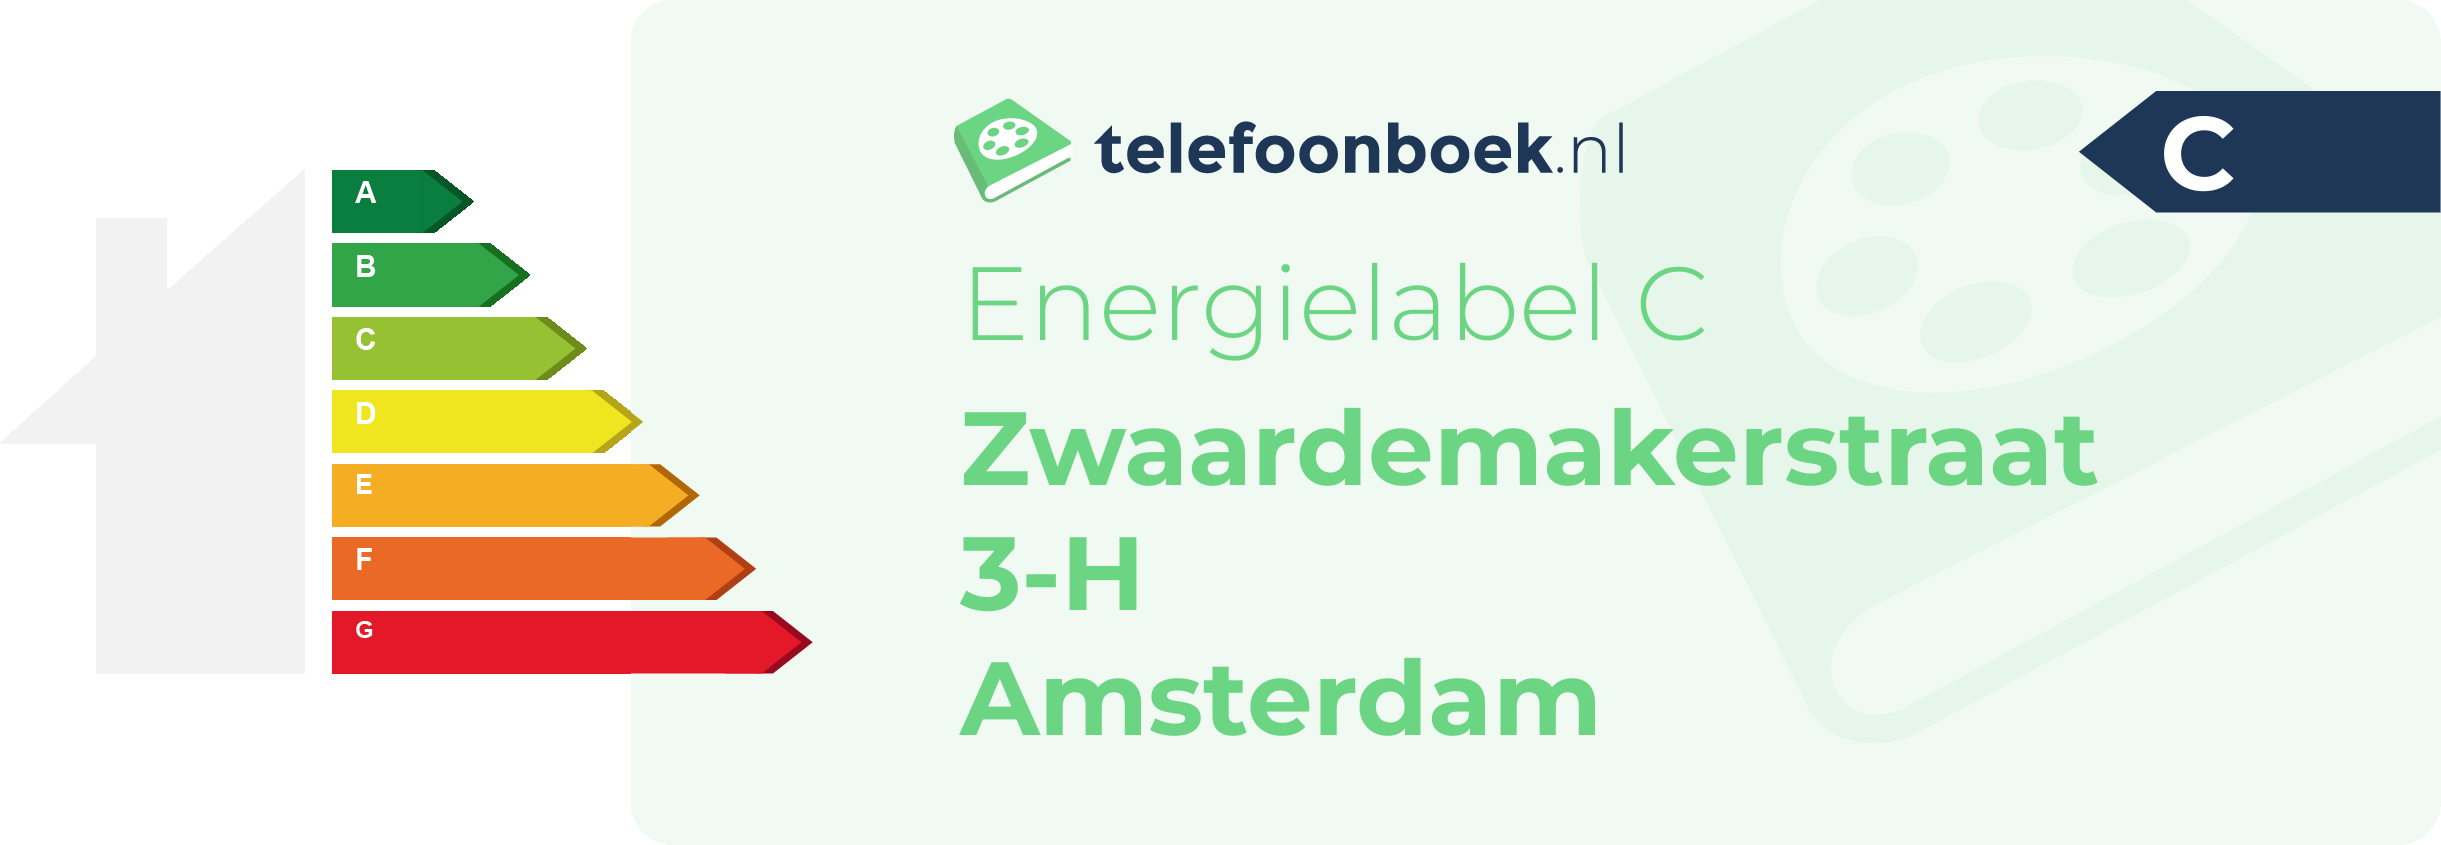 Energielabel Zwaardemakerstraat 3-H Amsterdam